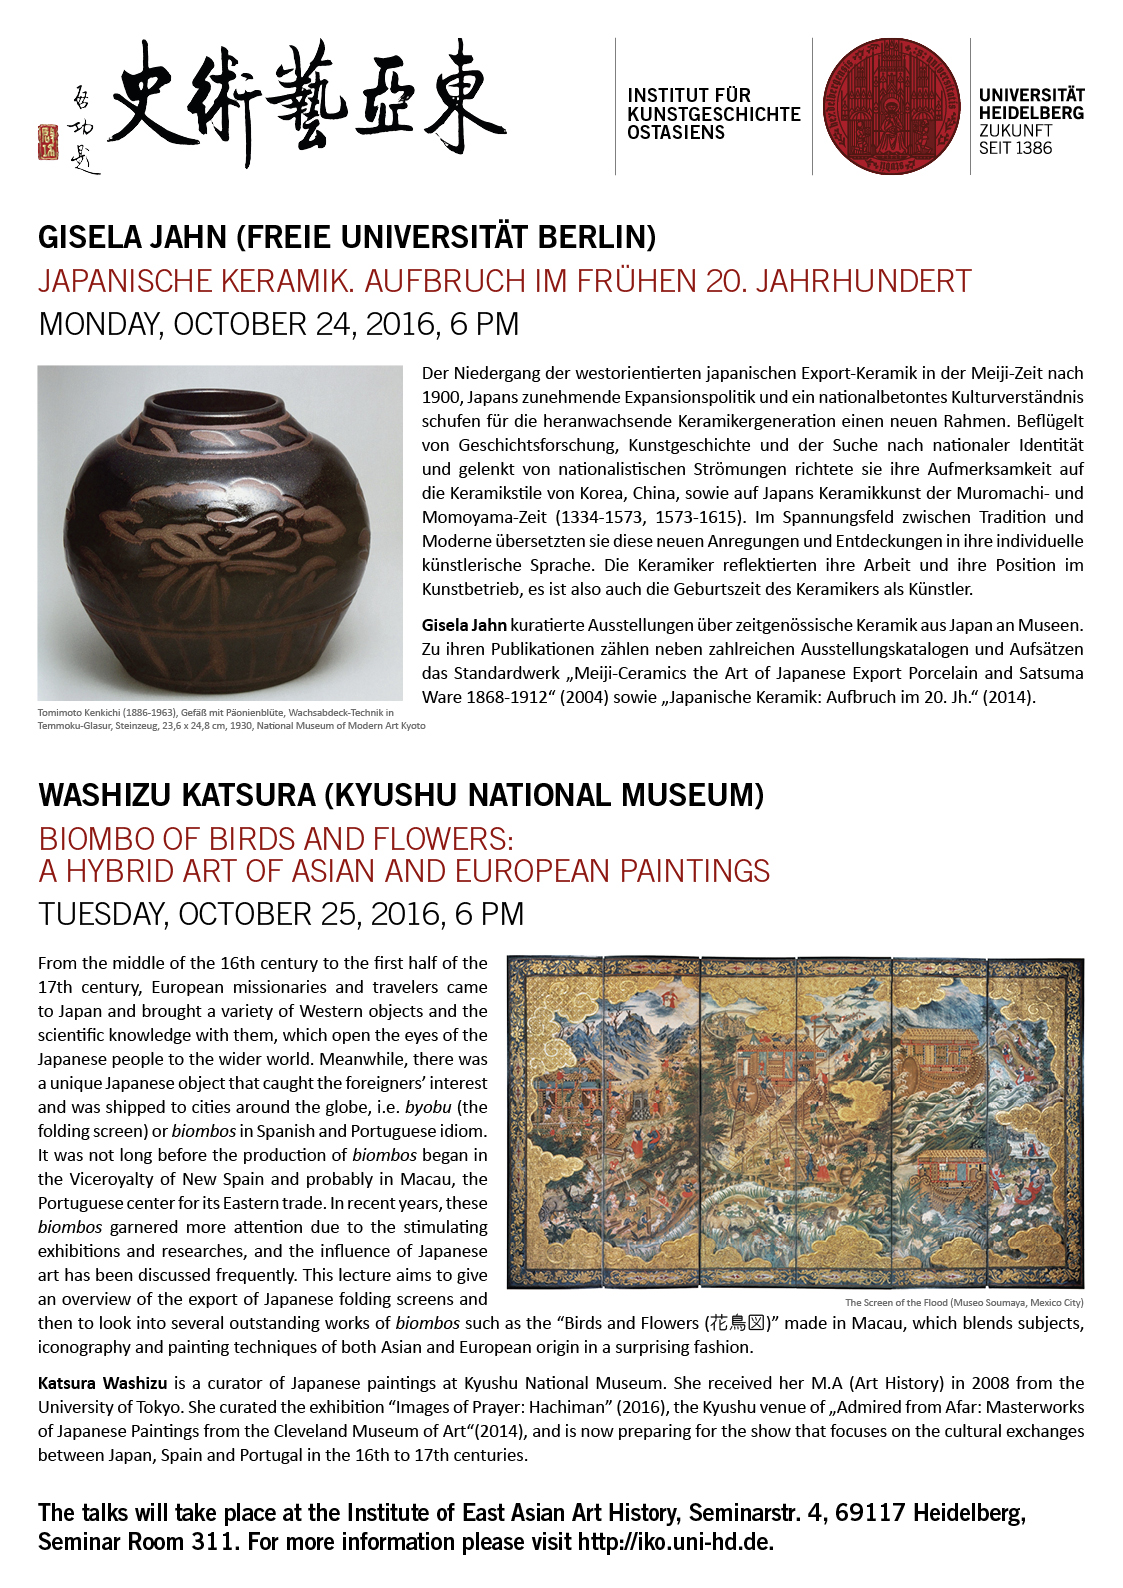 24. Oktober 2016 | Gisela Jahn: Japanische Keramik. Aufbruch im frühen 20. Jahrhundert